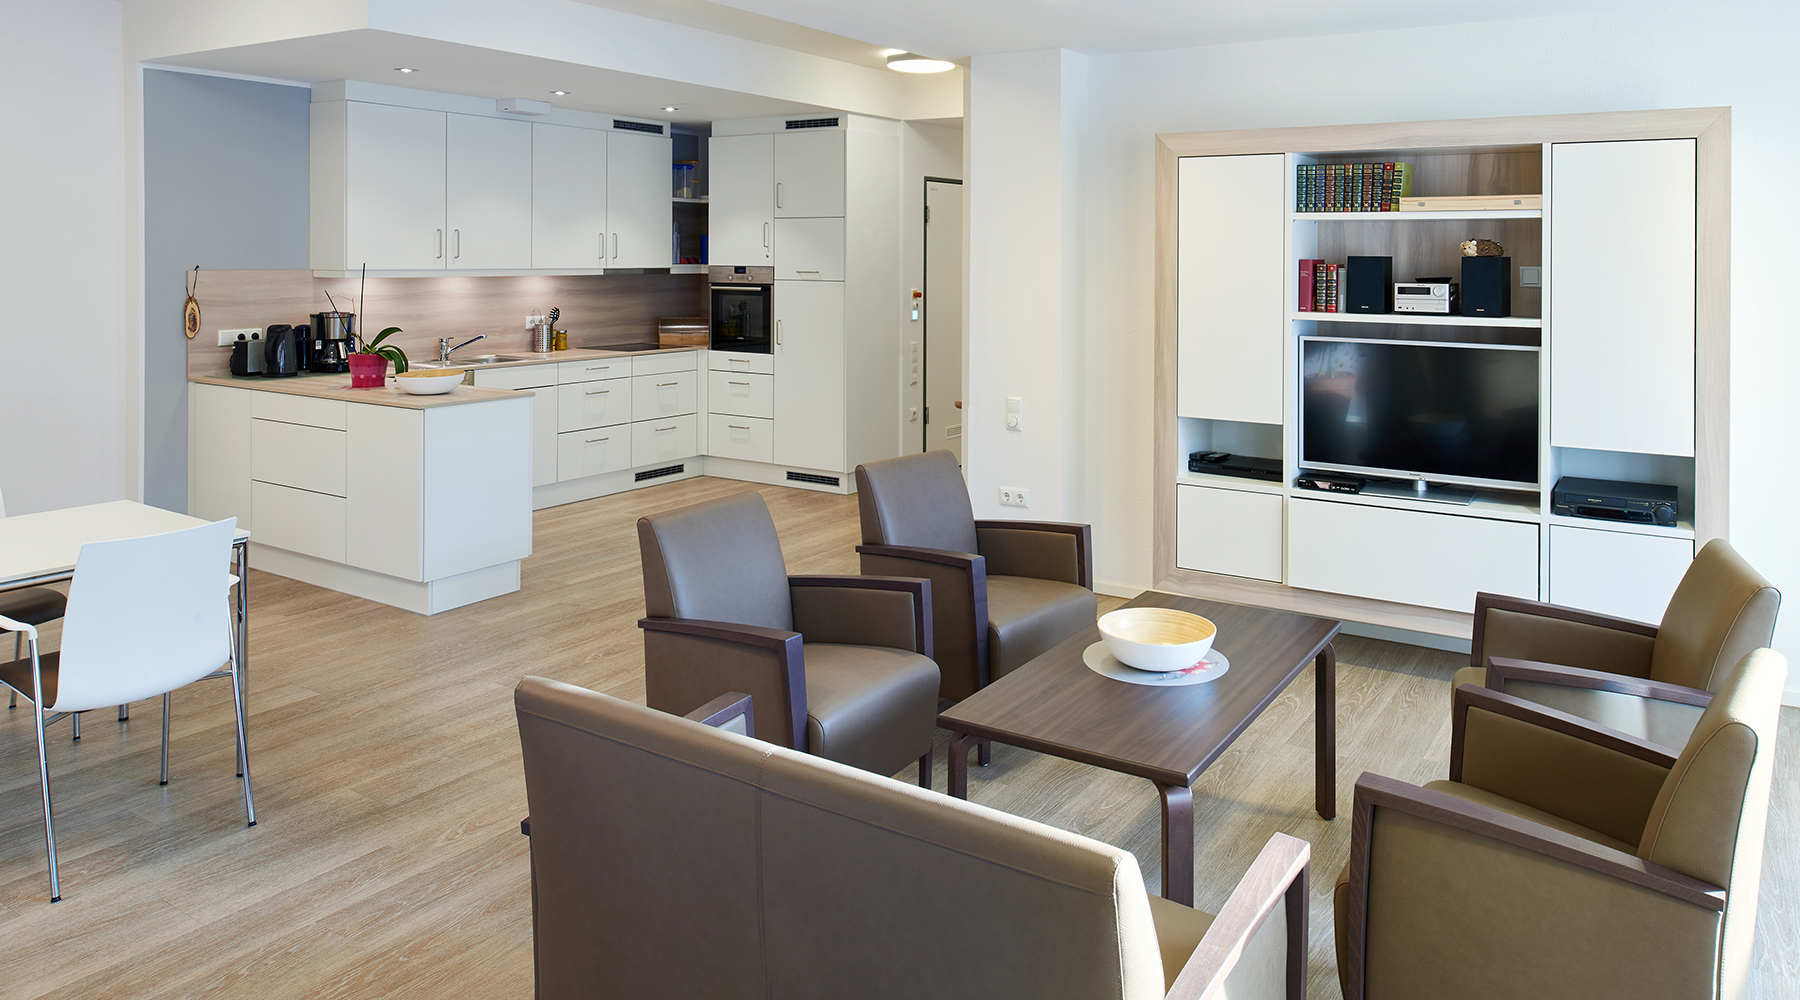 Moderner, offener Wohnbereich mit hellen Möbeln.